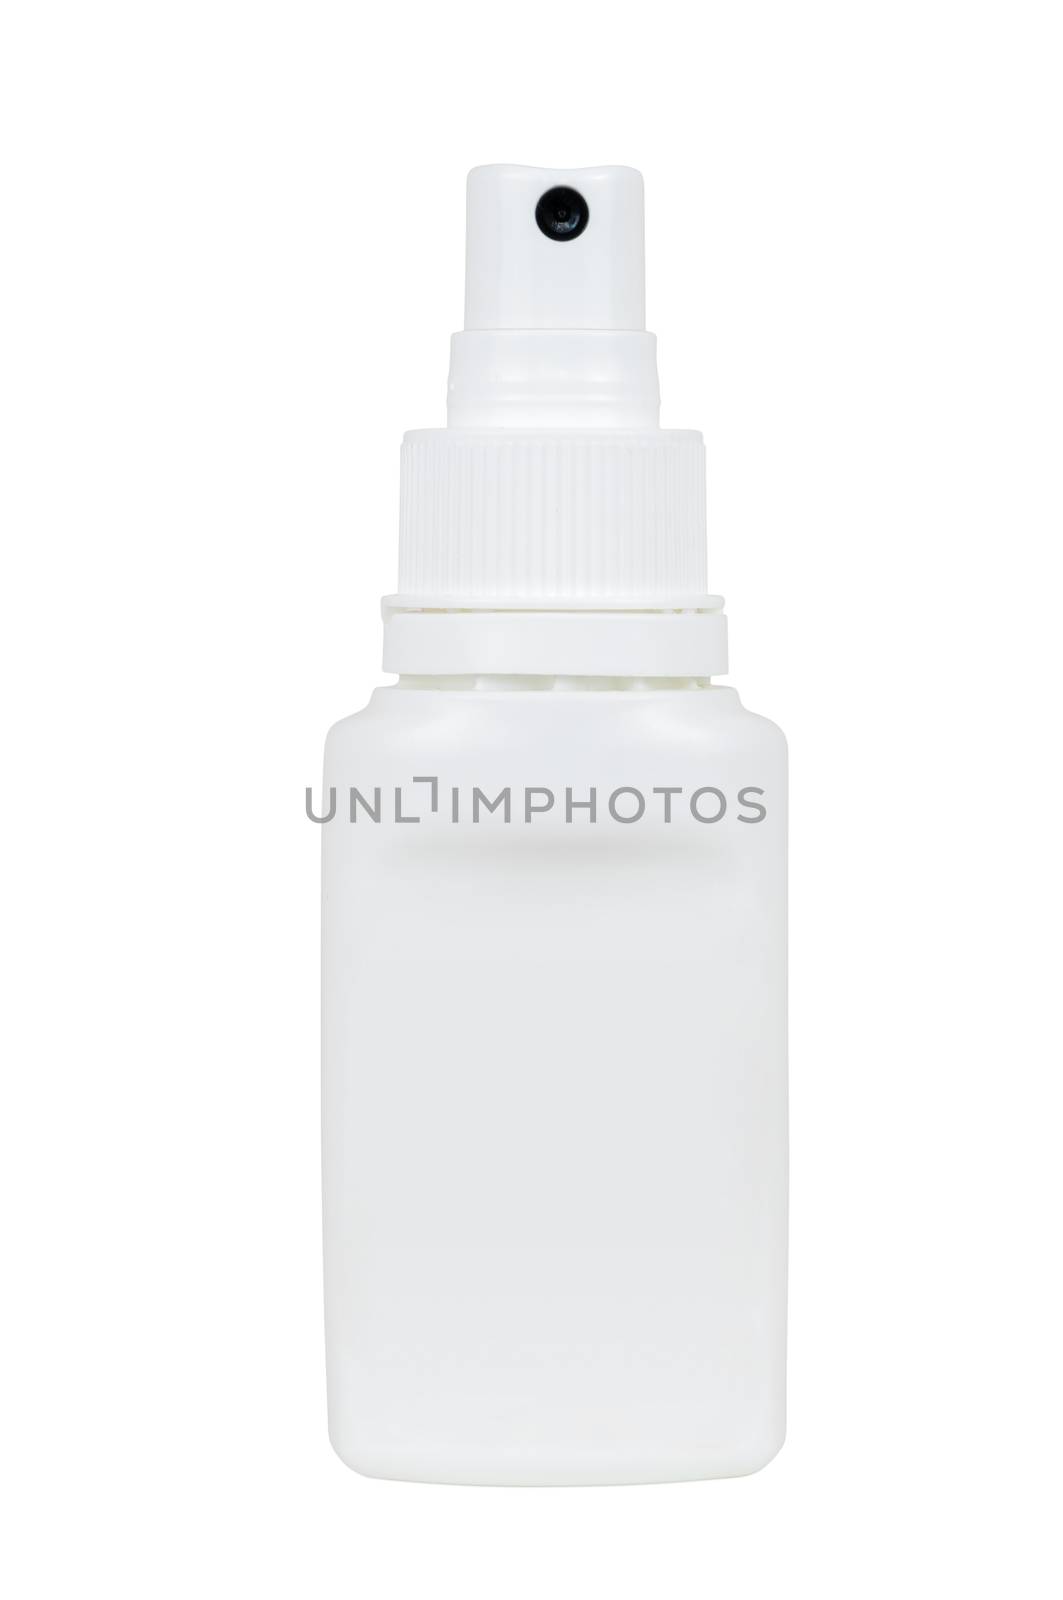 White spray plastic bottle by mkos83